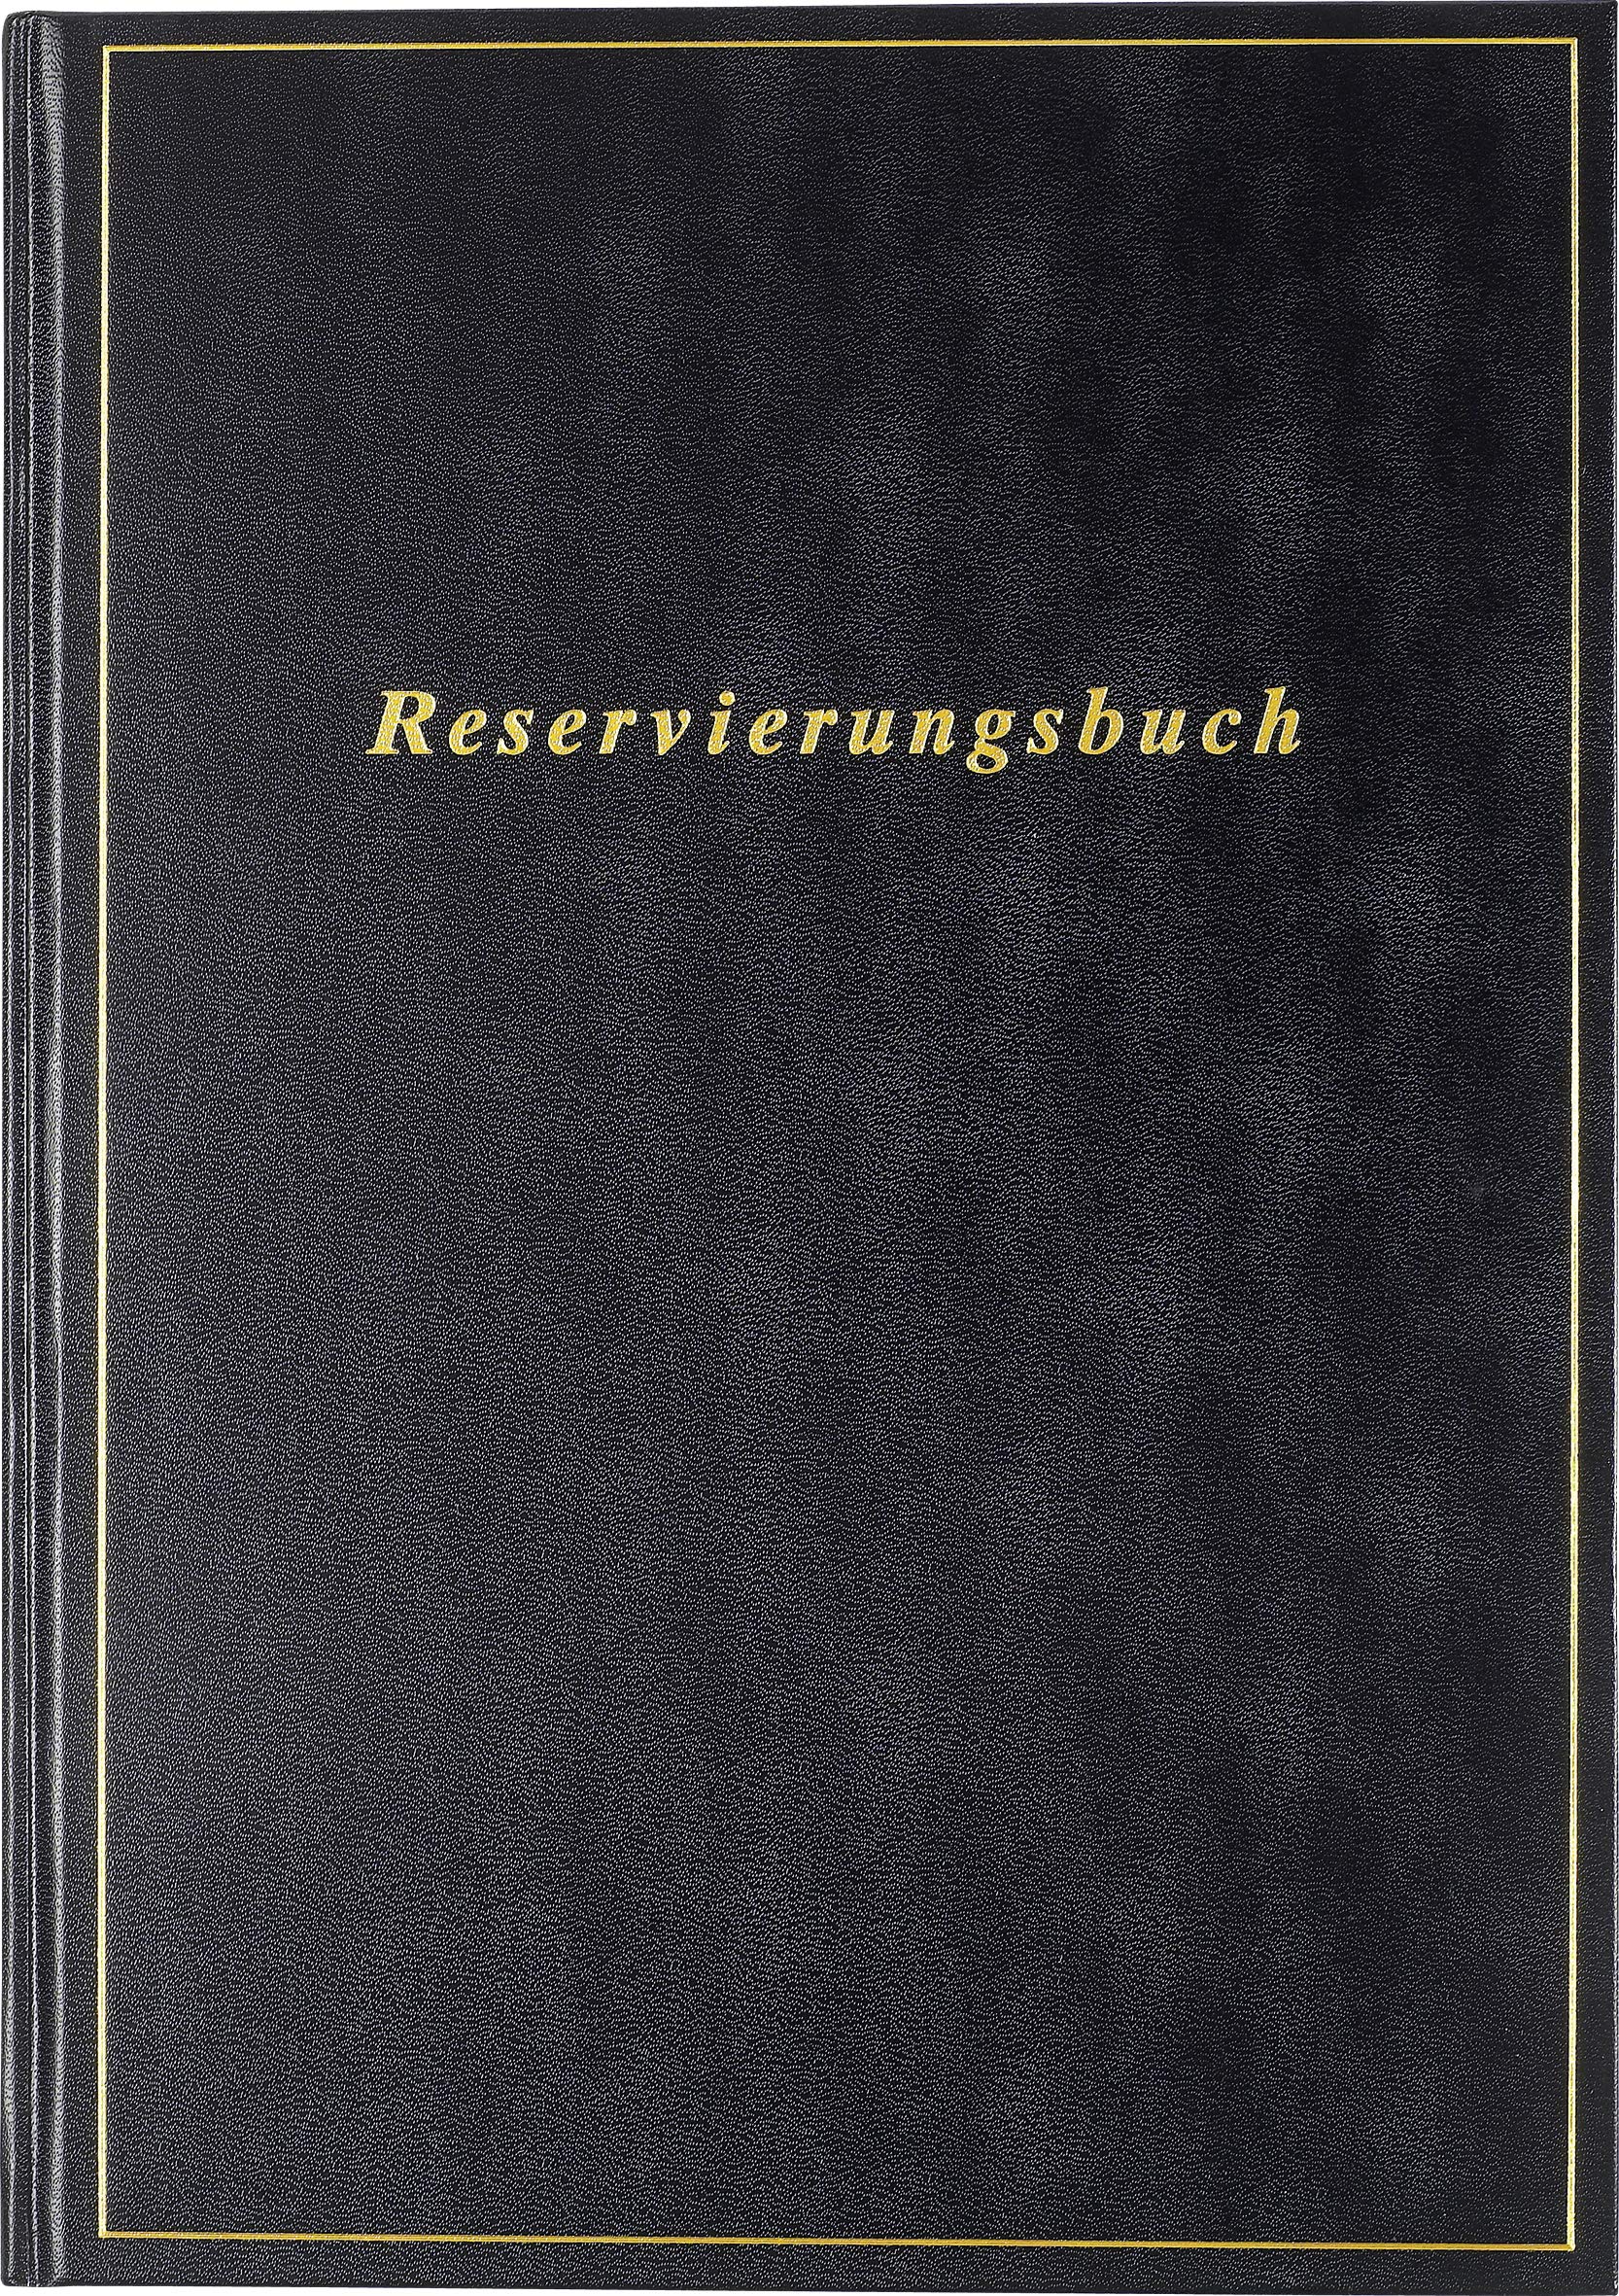 rido/idé 7027403901 Reservierungsbuch, 1 Seite = 1 Tag, 210 x 297 mm, Balacron-Einband schwarz, Kalendarium 2021